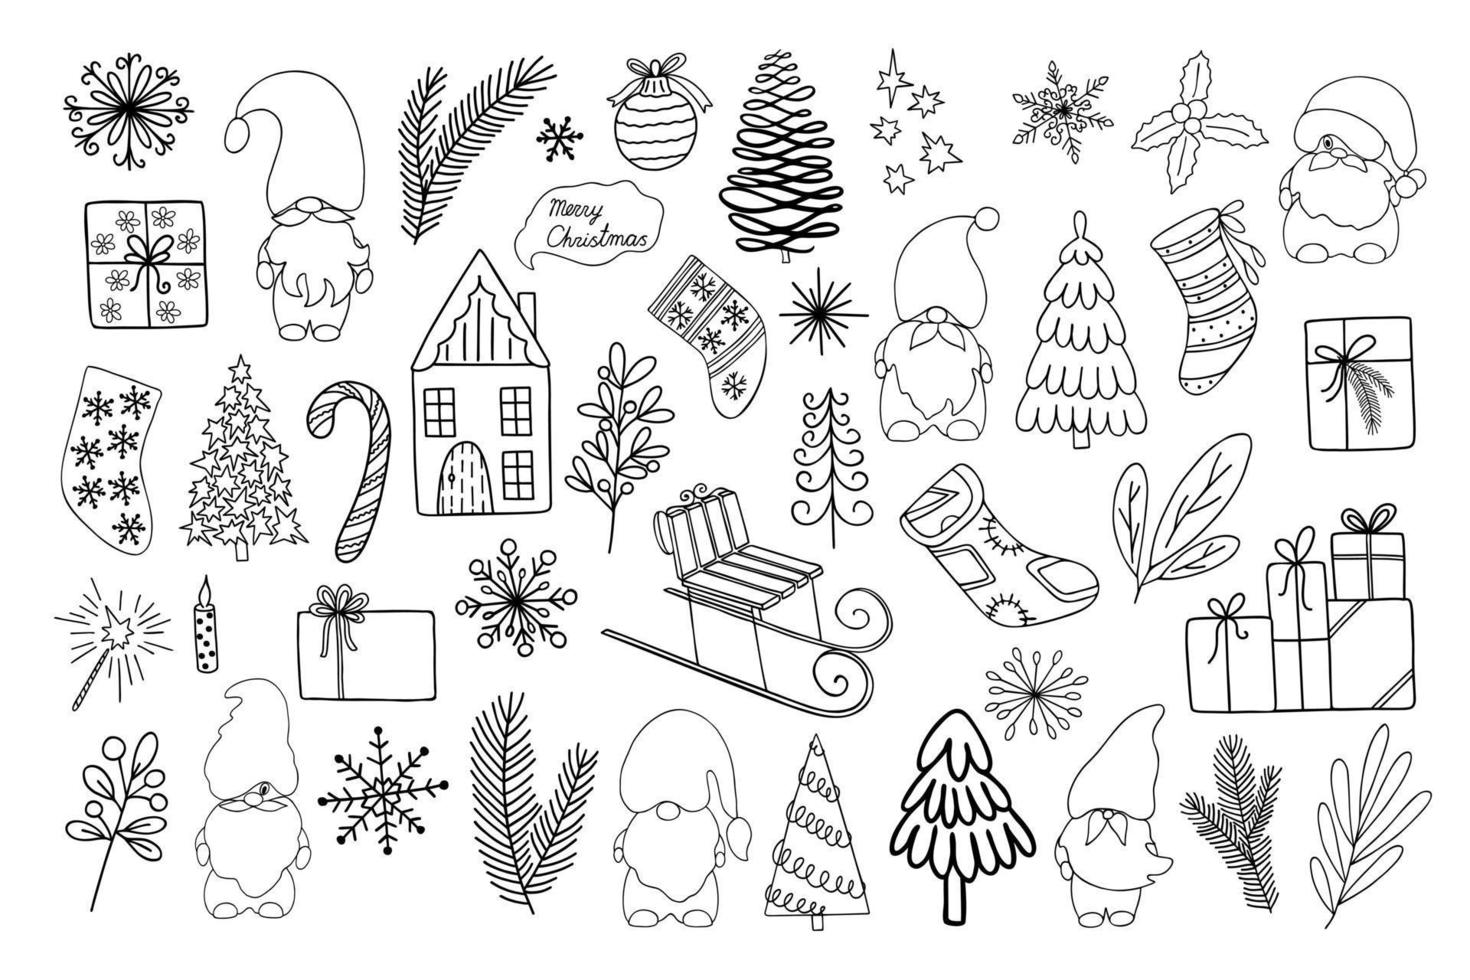 julelement som träd, presenter, strumpor, godis, snöflingor, tomtar handritade i enkel kontur doodle stil för vintersemester gratulationskort, inbjudningar, banderoller, dekor, klistermärken vektor